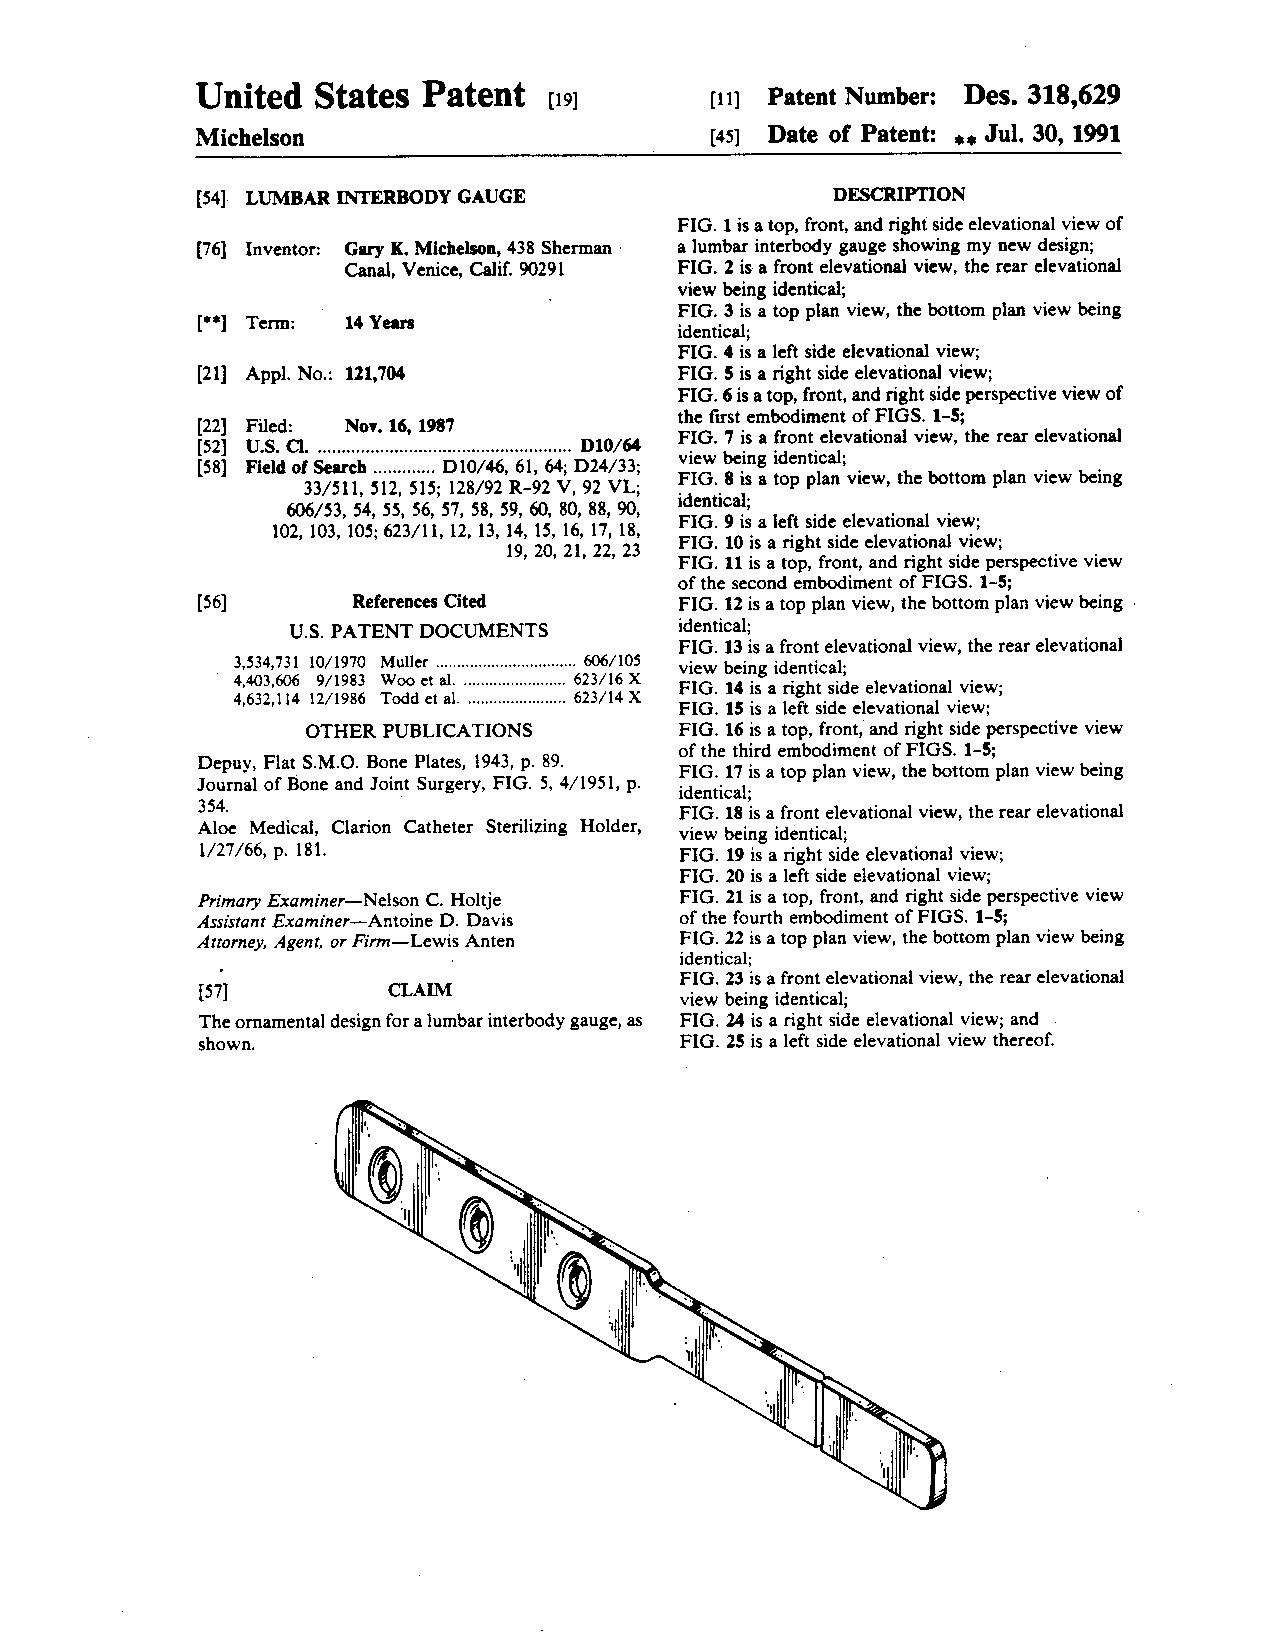 Lumbar interbody gauge - Patent D318,629